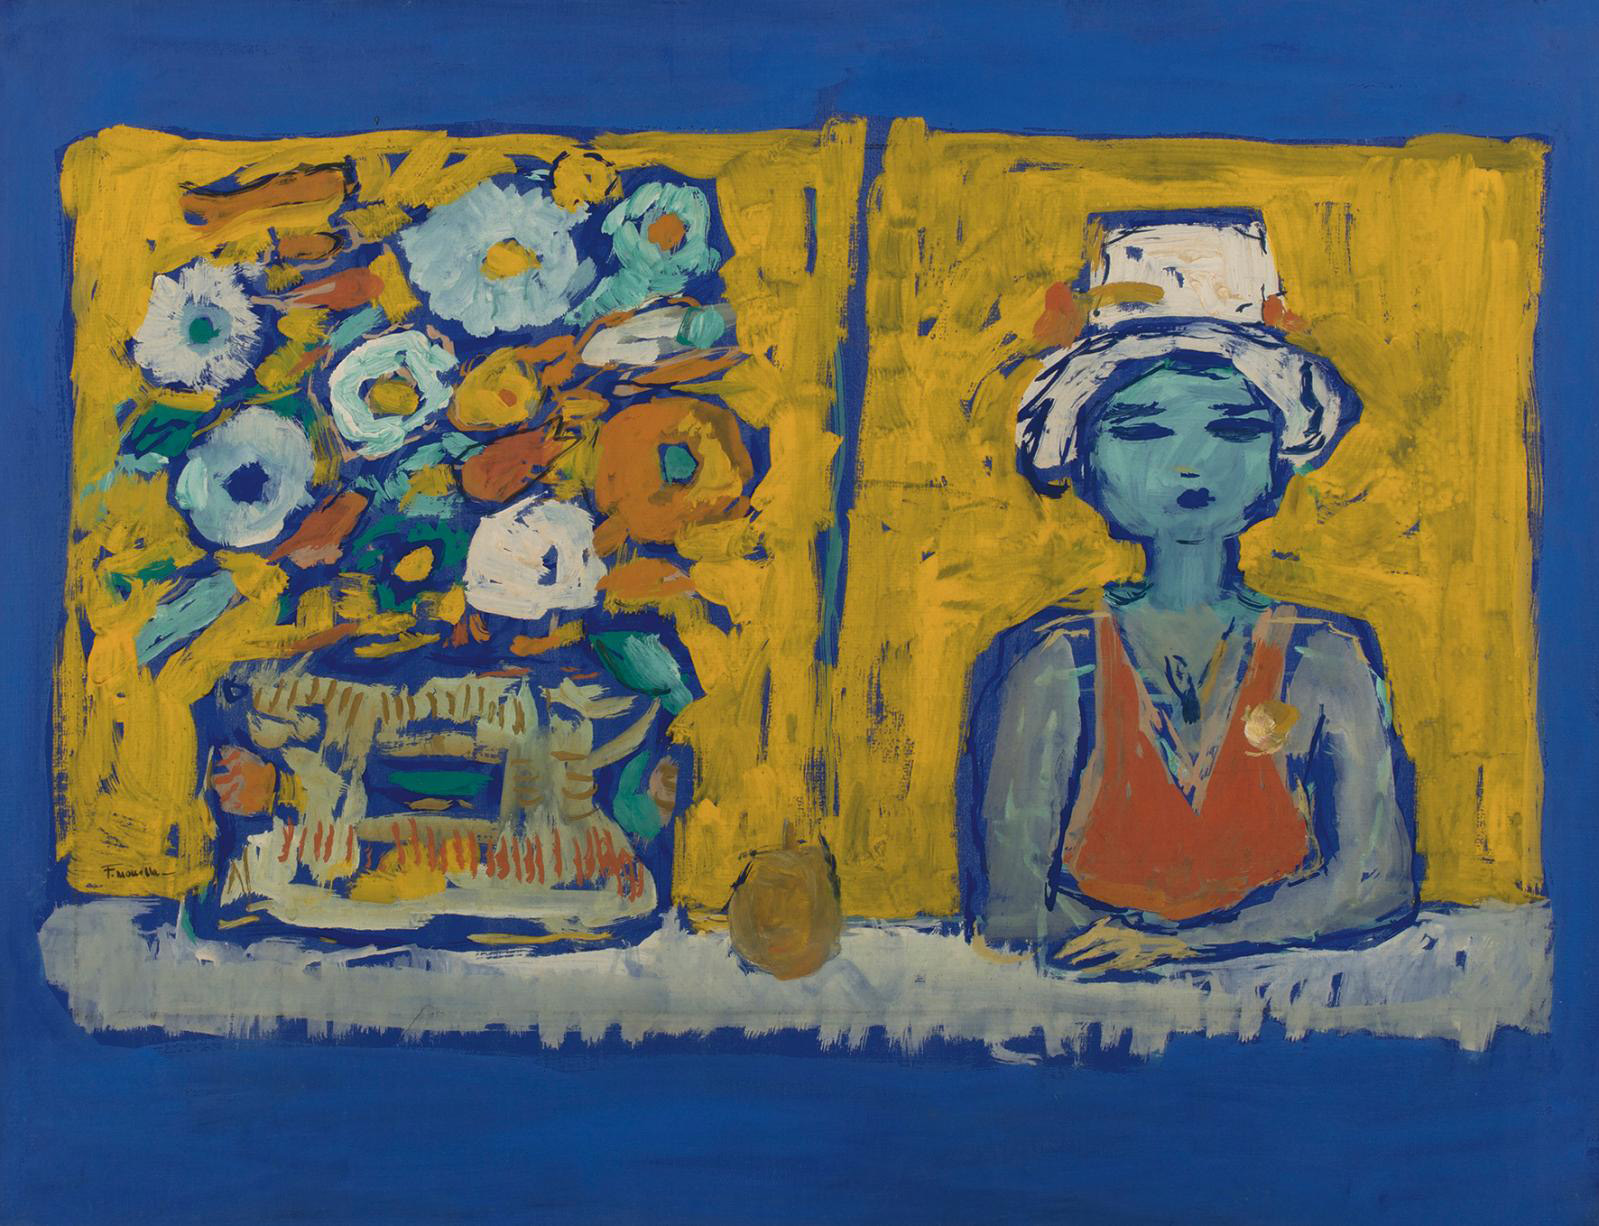 Fikret Moualla (1903-1967), Femme et vase de fleurs (Woman and Vase of Flowers), gouache on paper mounted on canvas, 48.5 x 65.5 cm/19 x 2